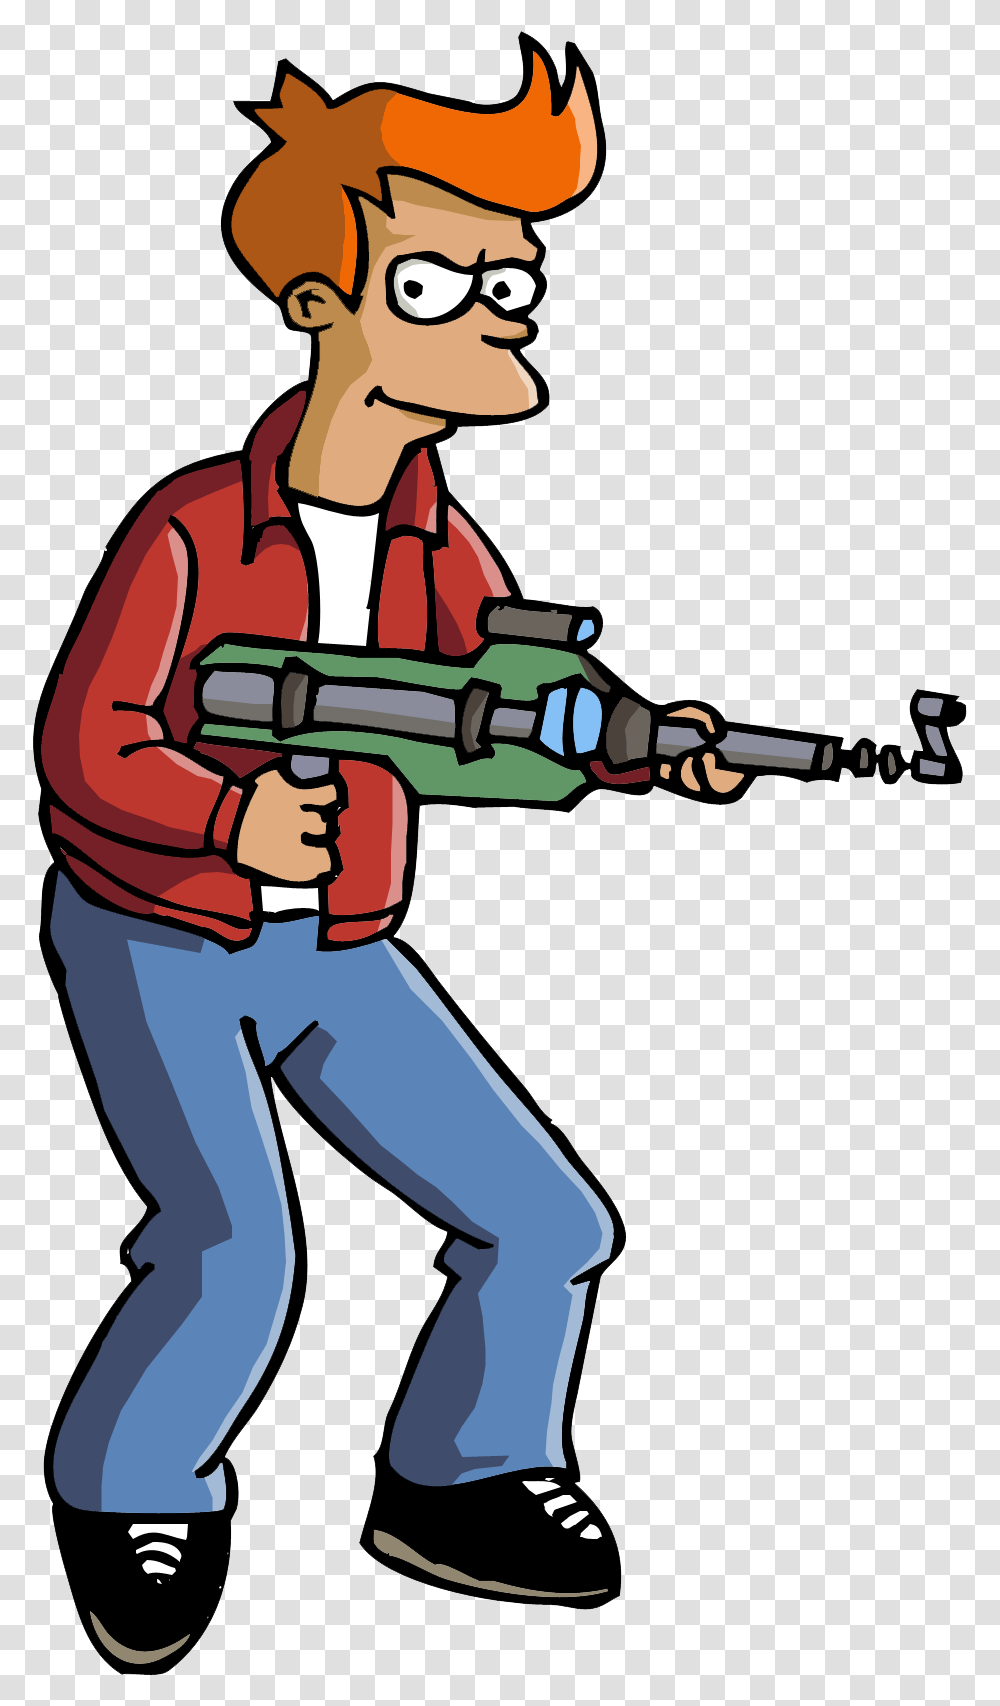 Futurama Fry Gun Image Sad Futurama, Person, Weapon, Tool Transparent Png